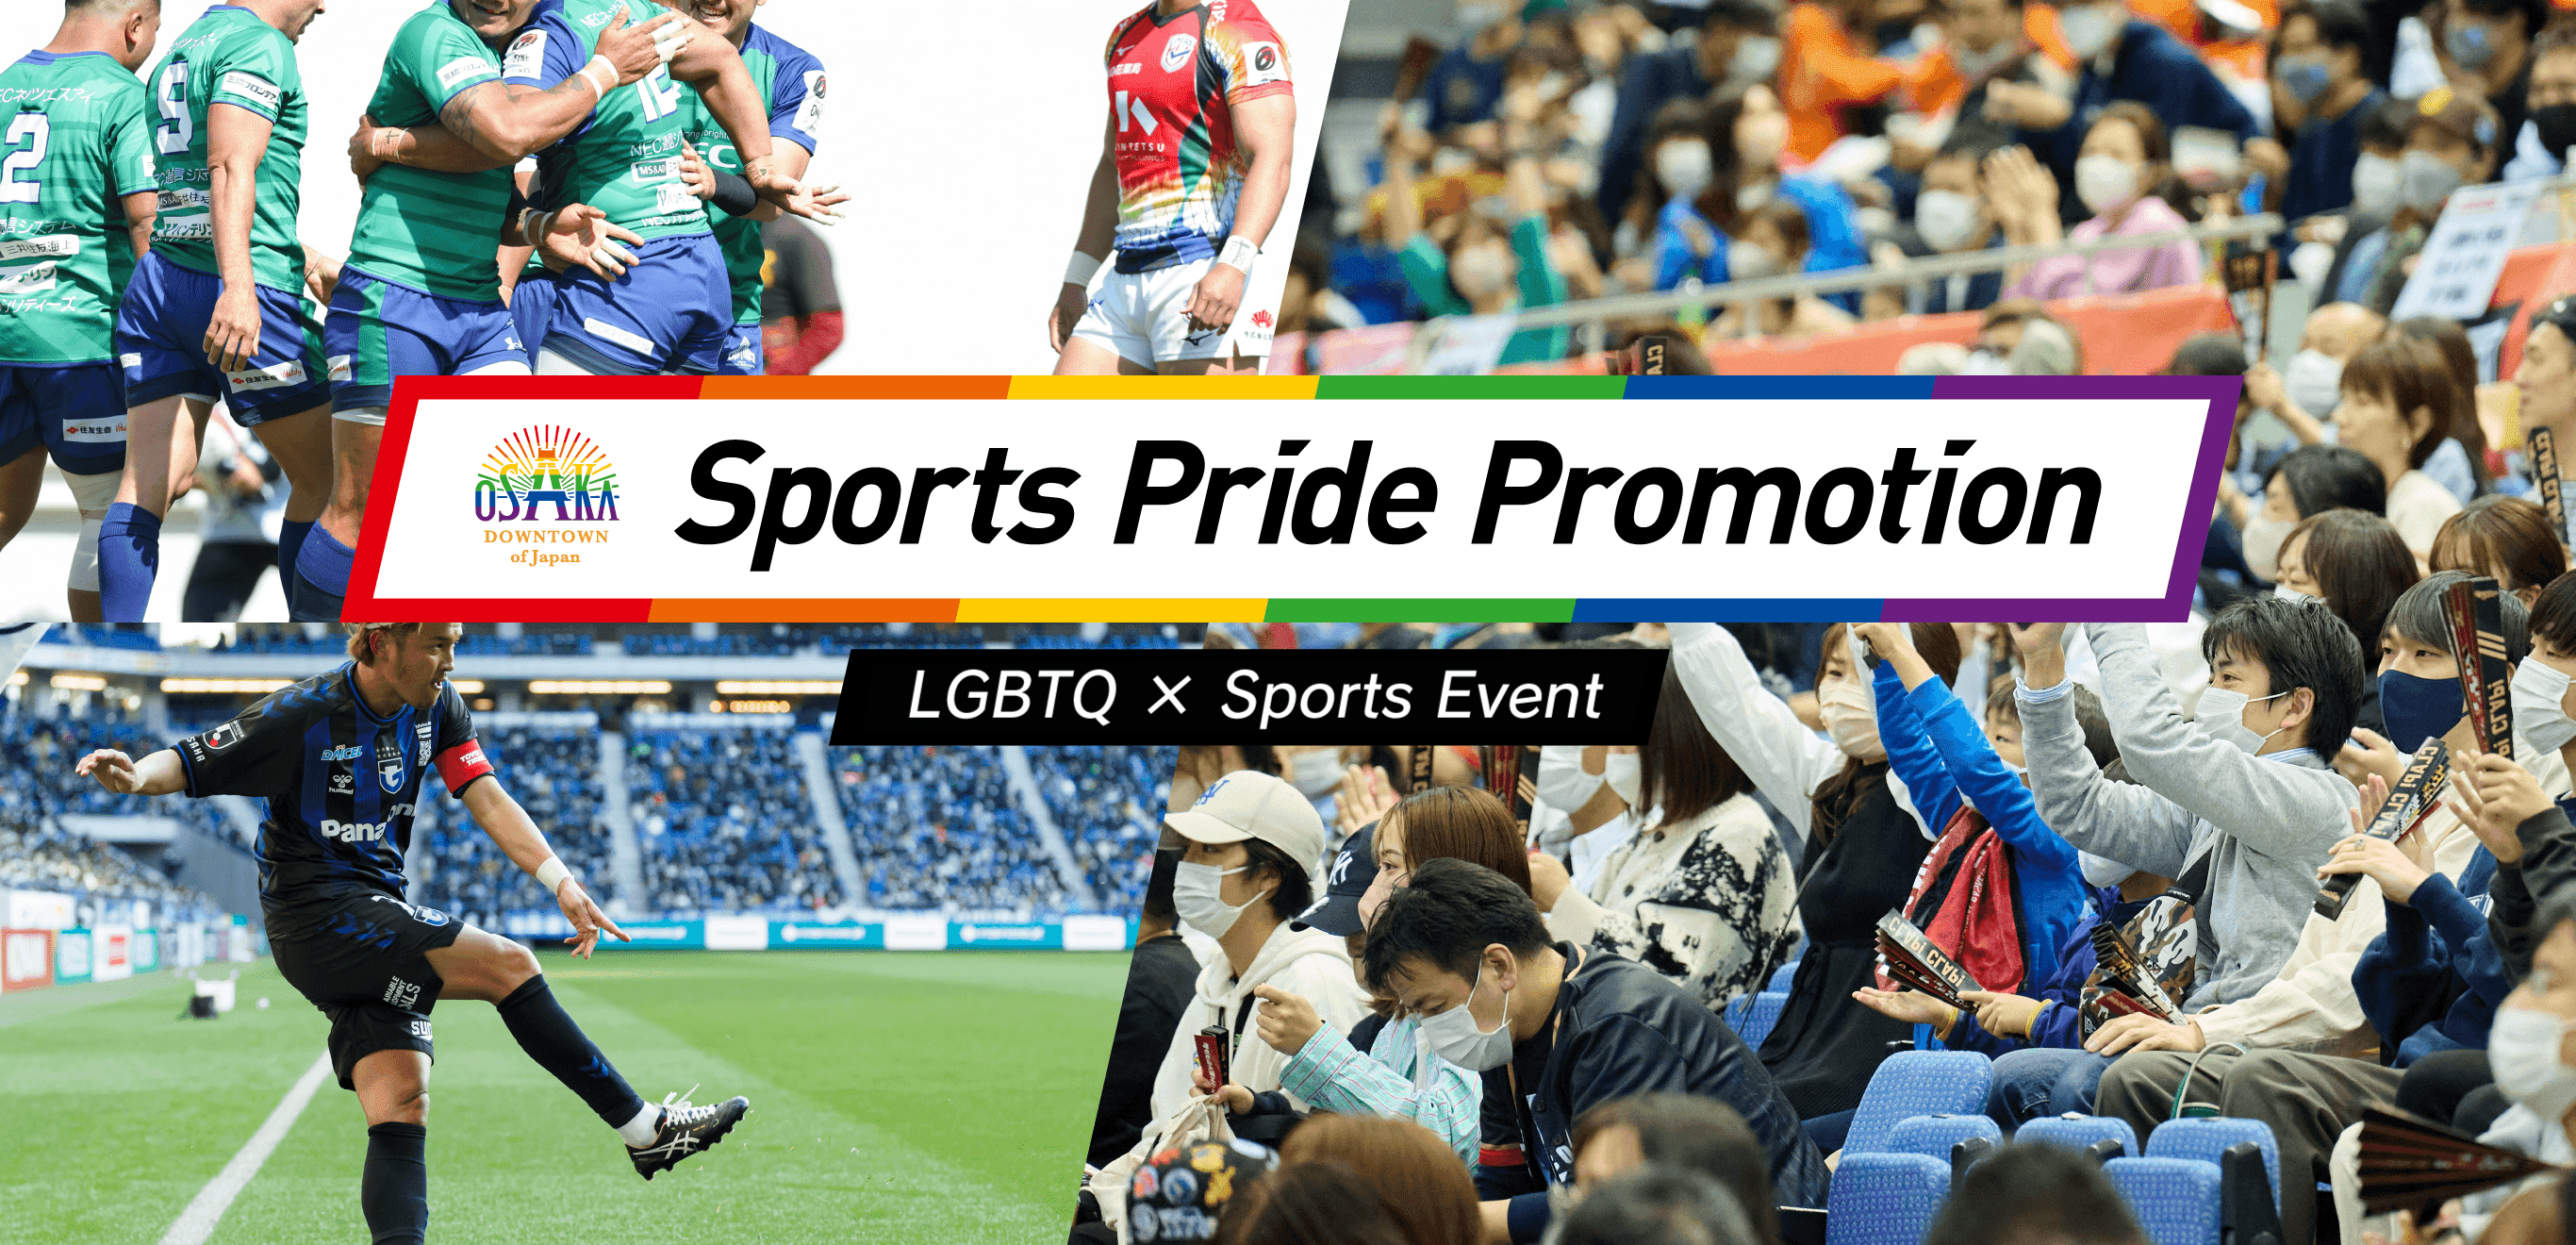 LGBTQ × Sports Event